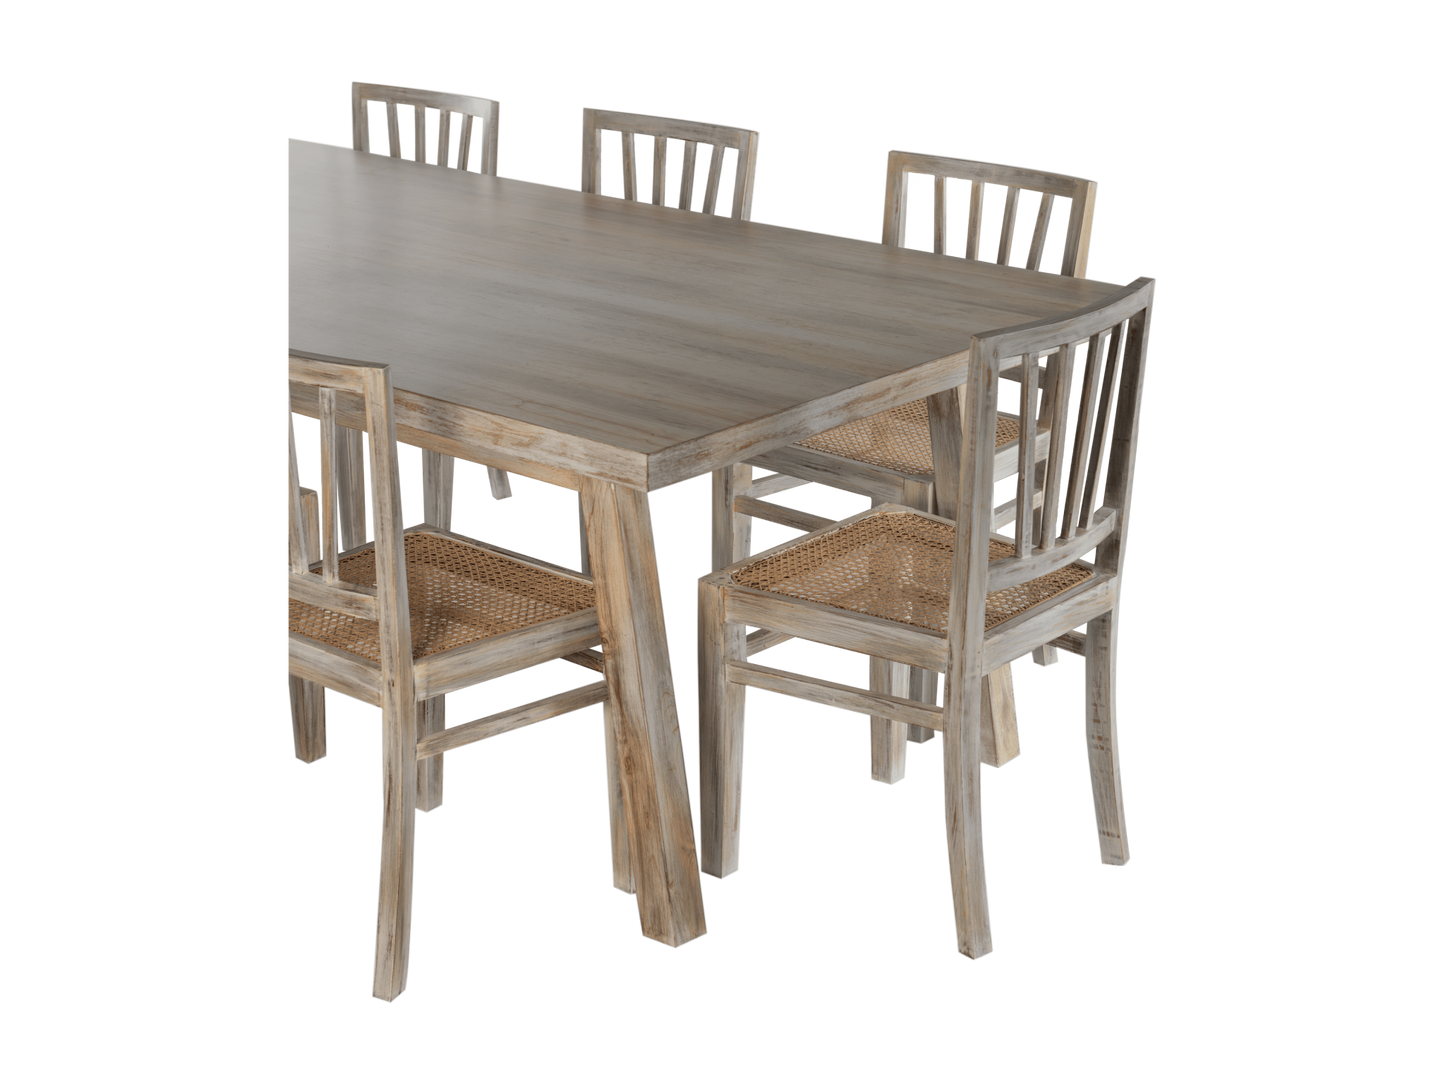 Modern farmhouse dining table